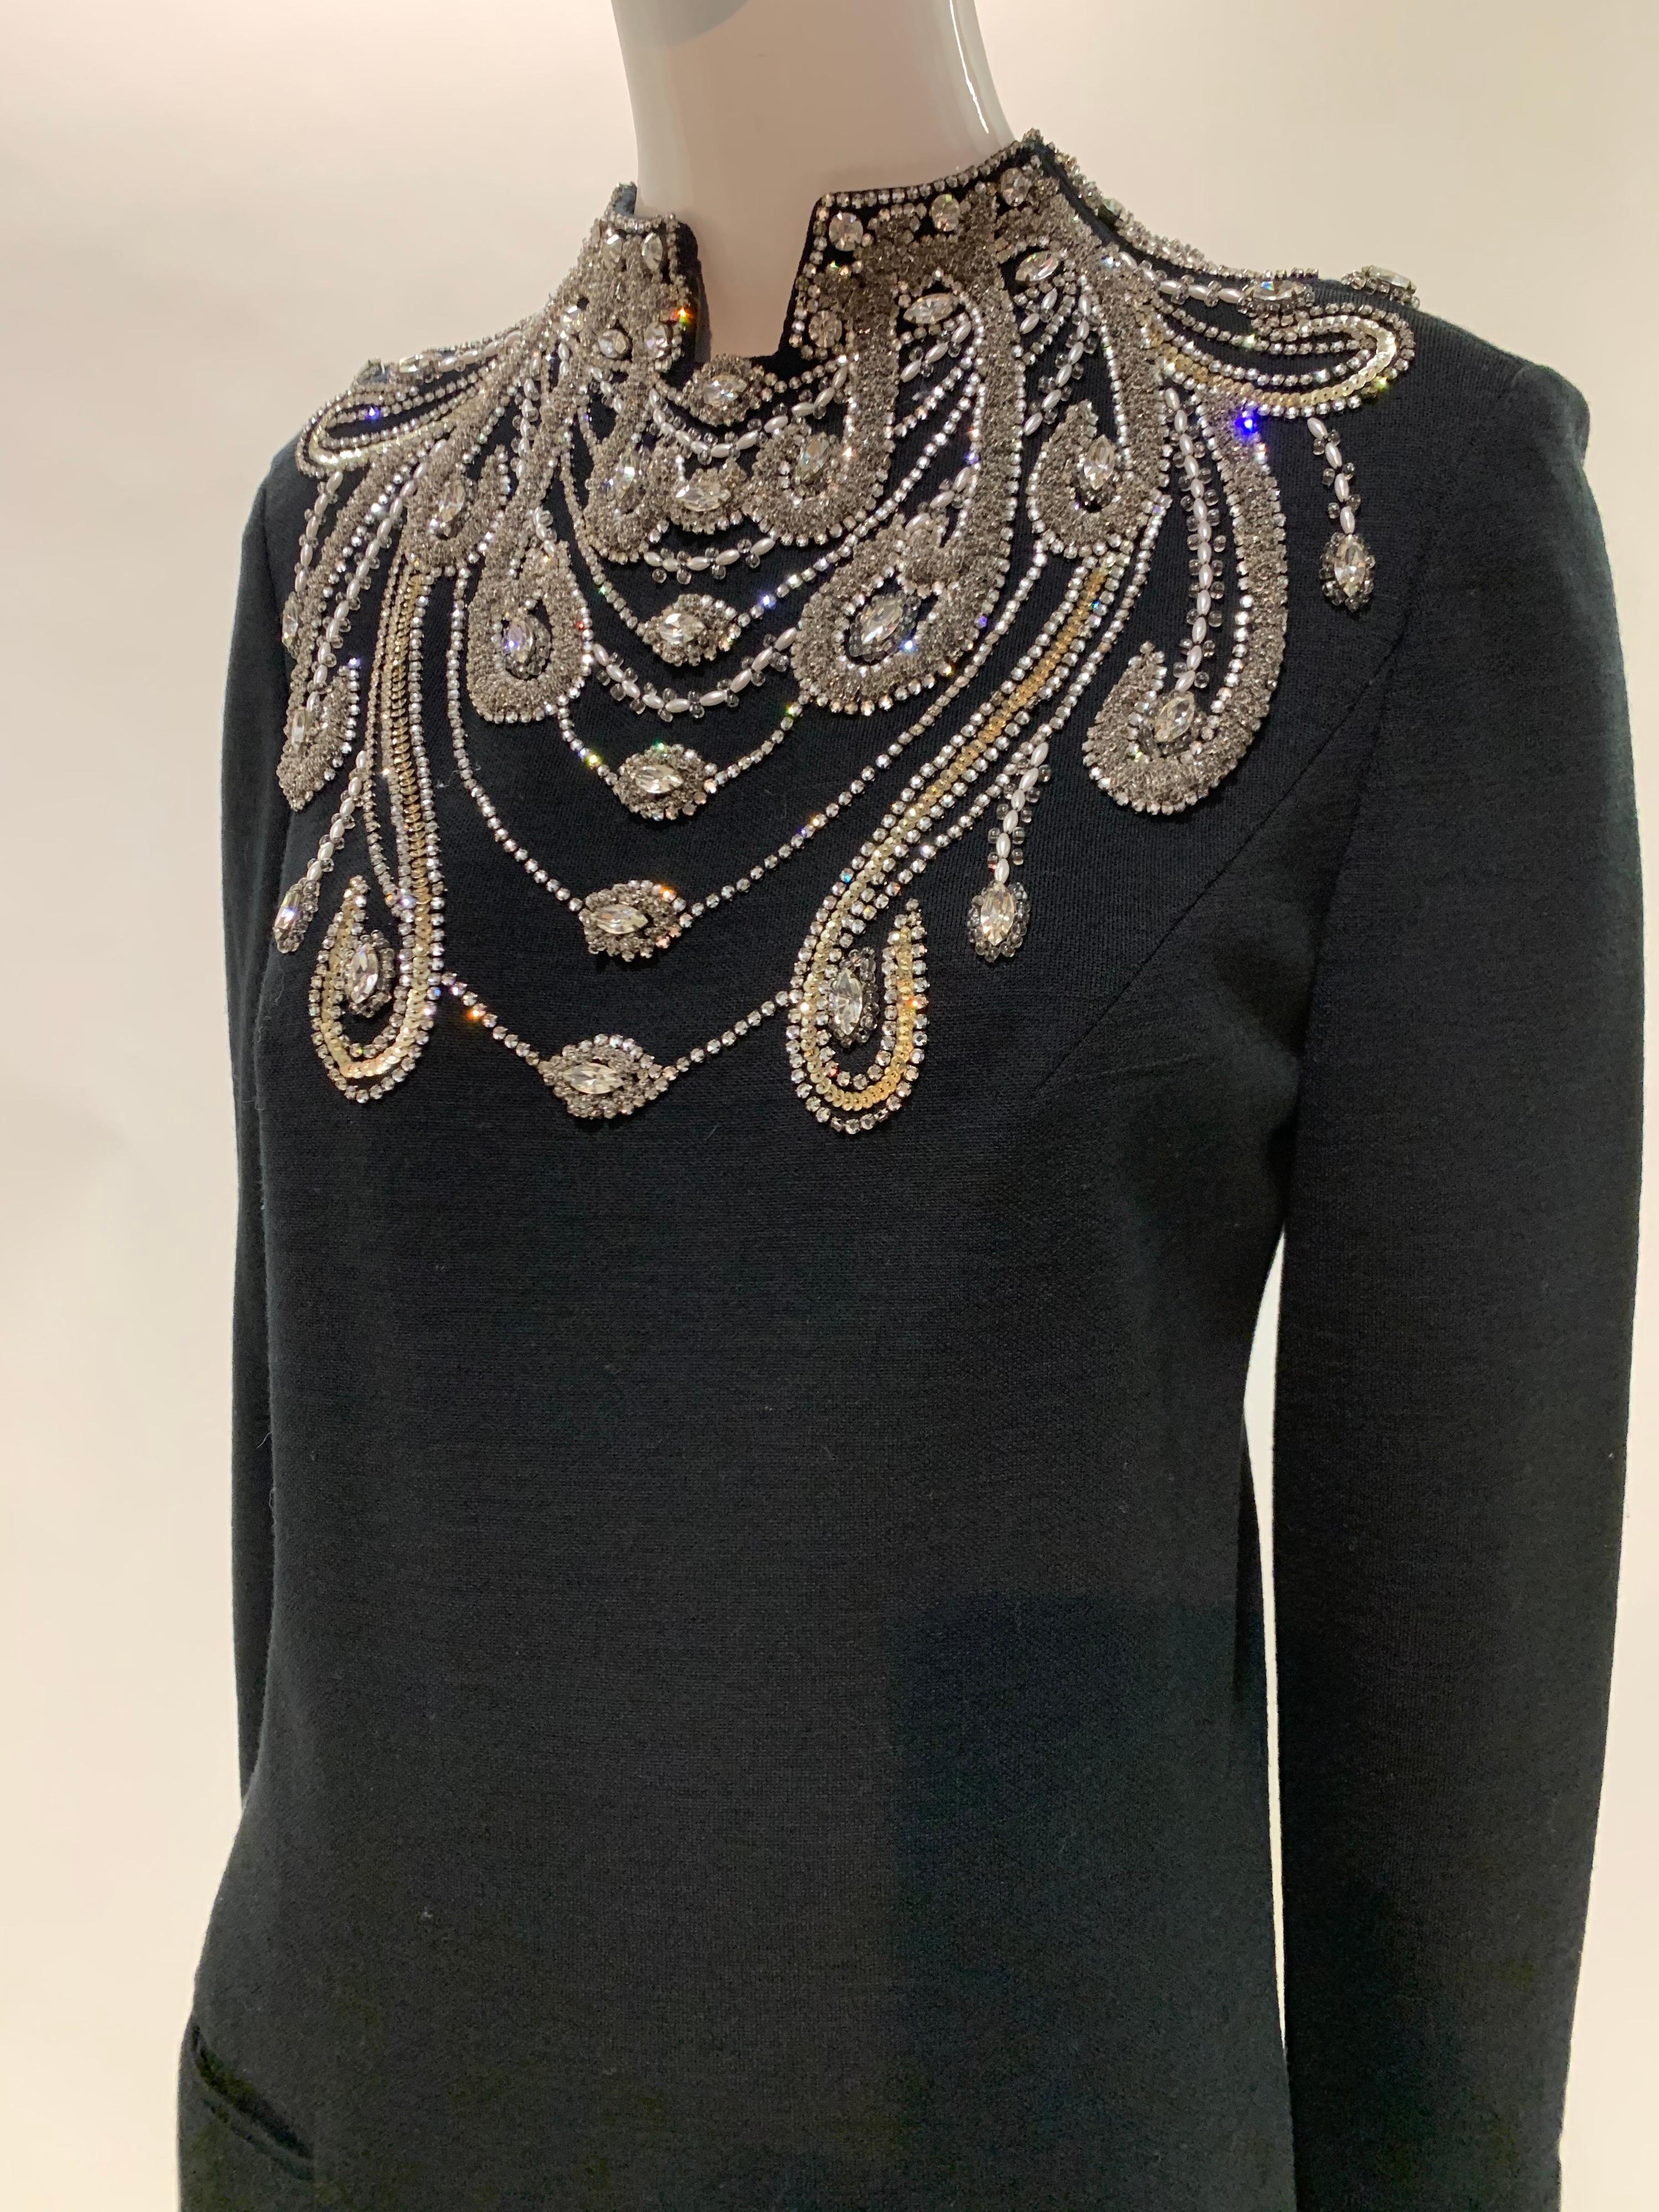 1960 Spectaculaire robe de cocktail de M. Blackwell, personnalisée et ornée de pierres précieuses. Robe noire en tricot de laine, longueur genoux, avec un étonnant corsage avant de style Art Nouveau, orné de strass argentés, de perles et de